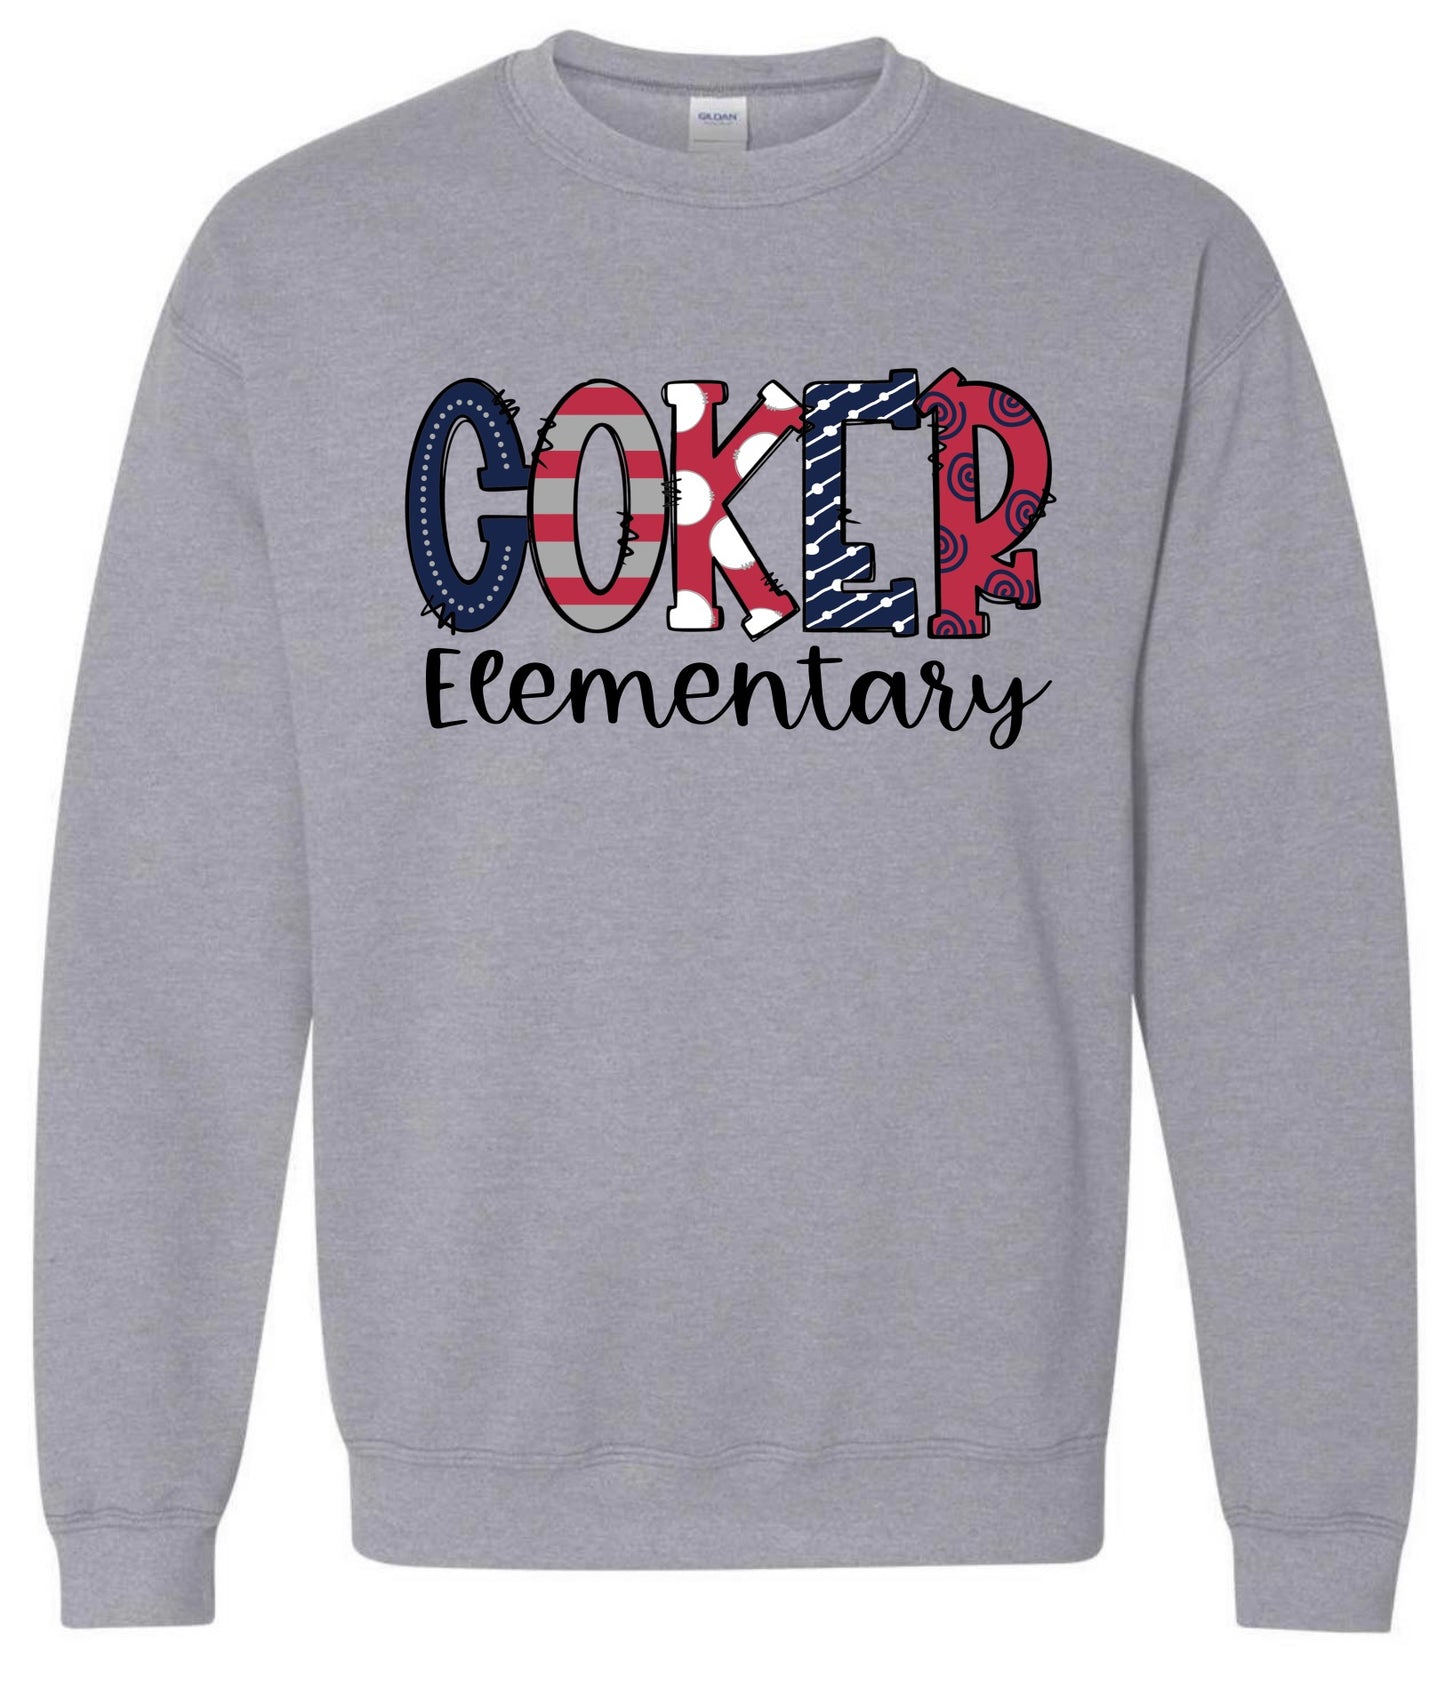 Coker Elementary Doodle Design Sweatshirt